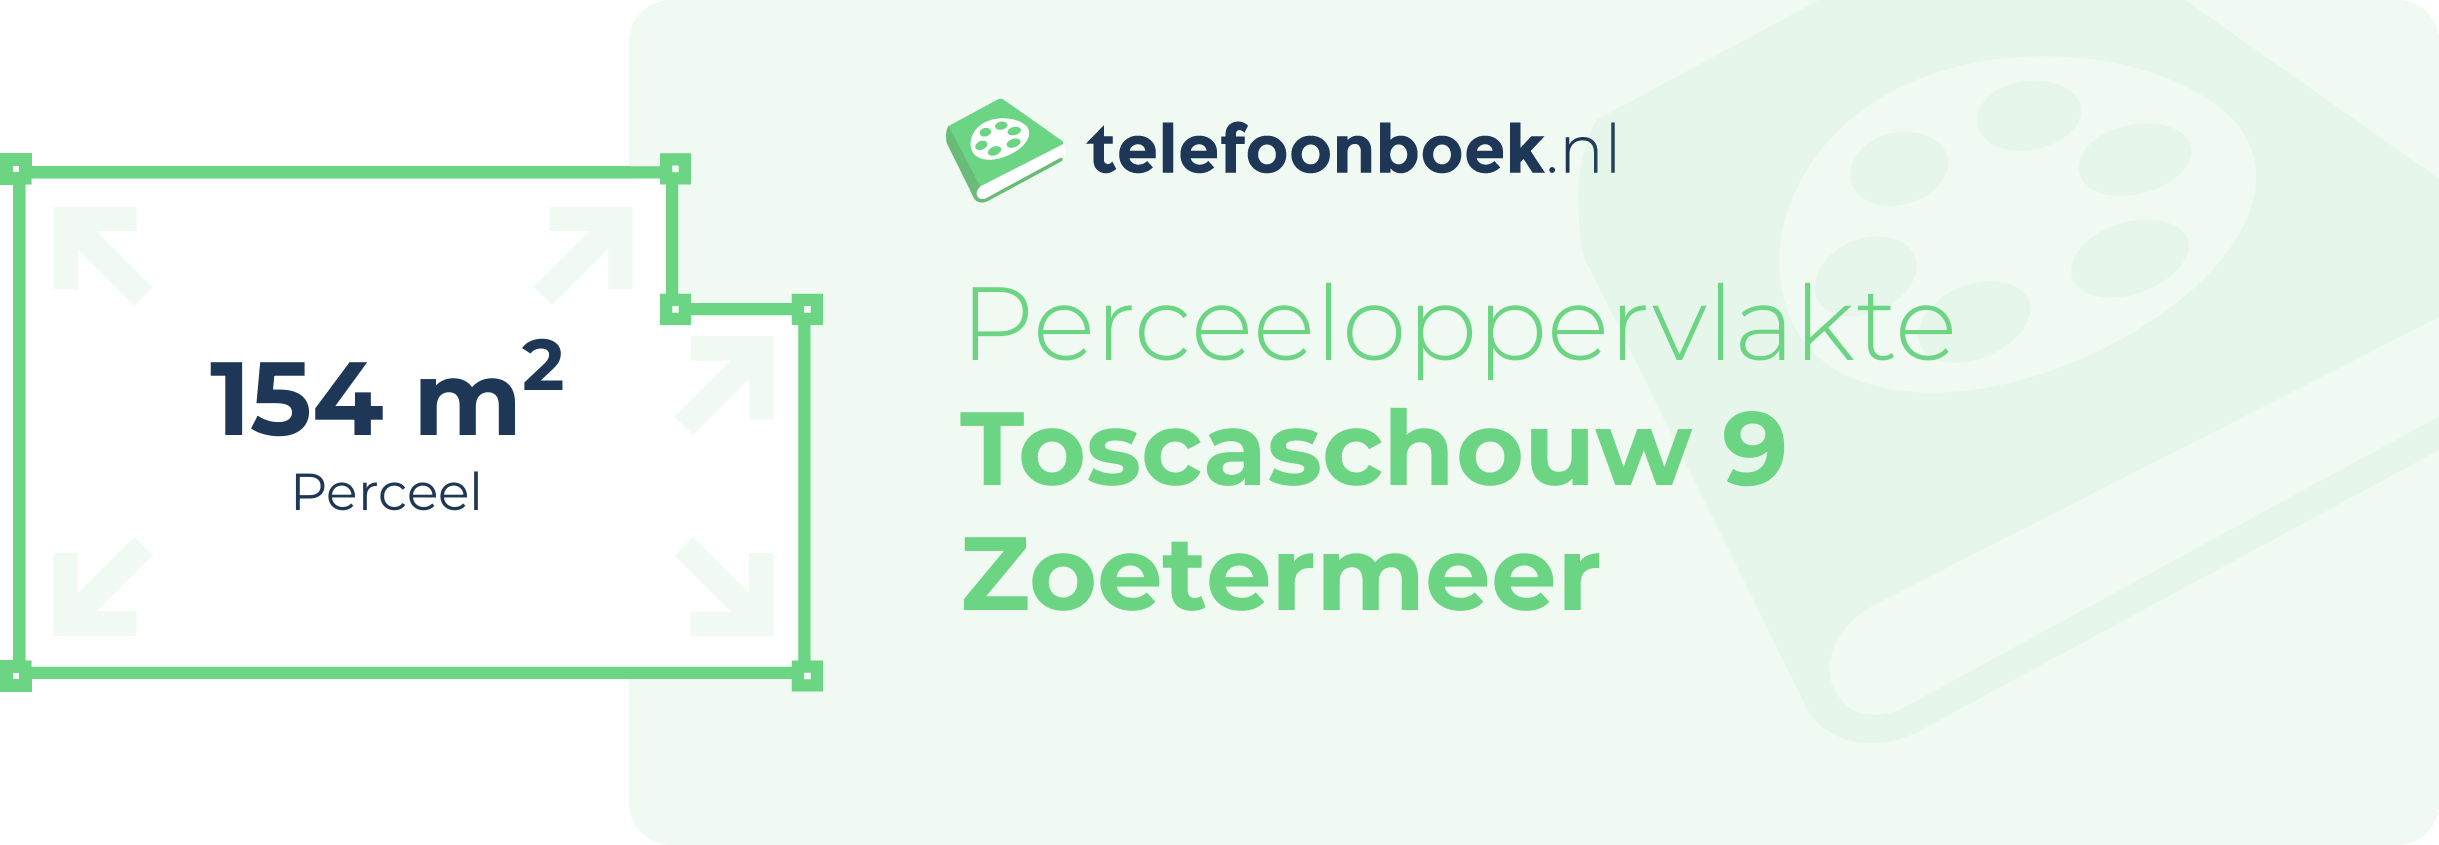 Perceeloppervlakte Toscaschouw 9 Zoetermeer